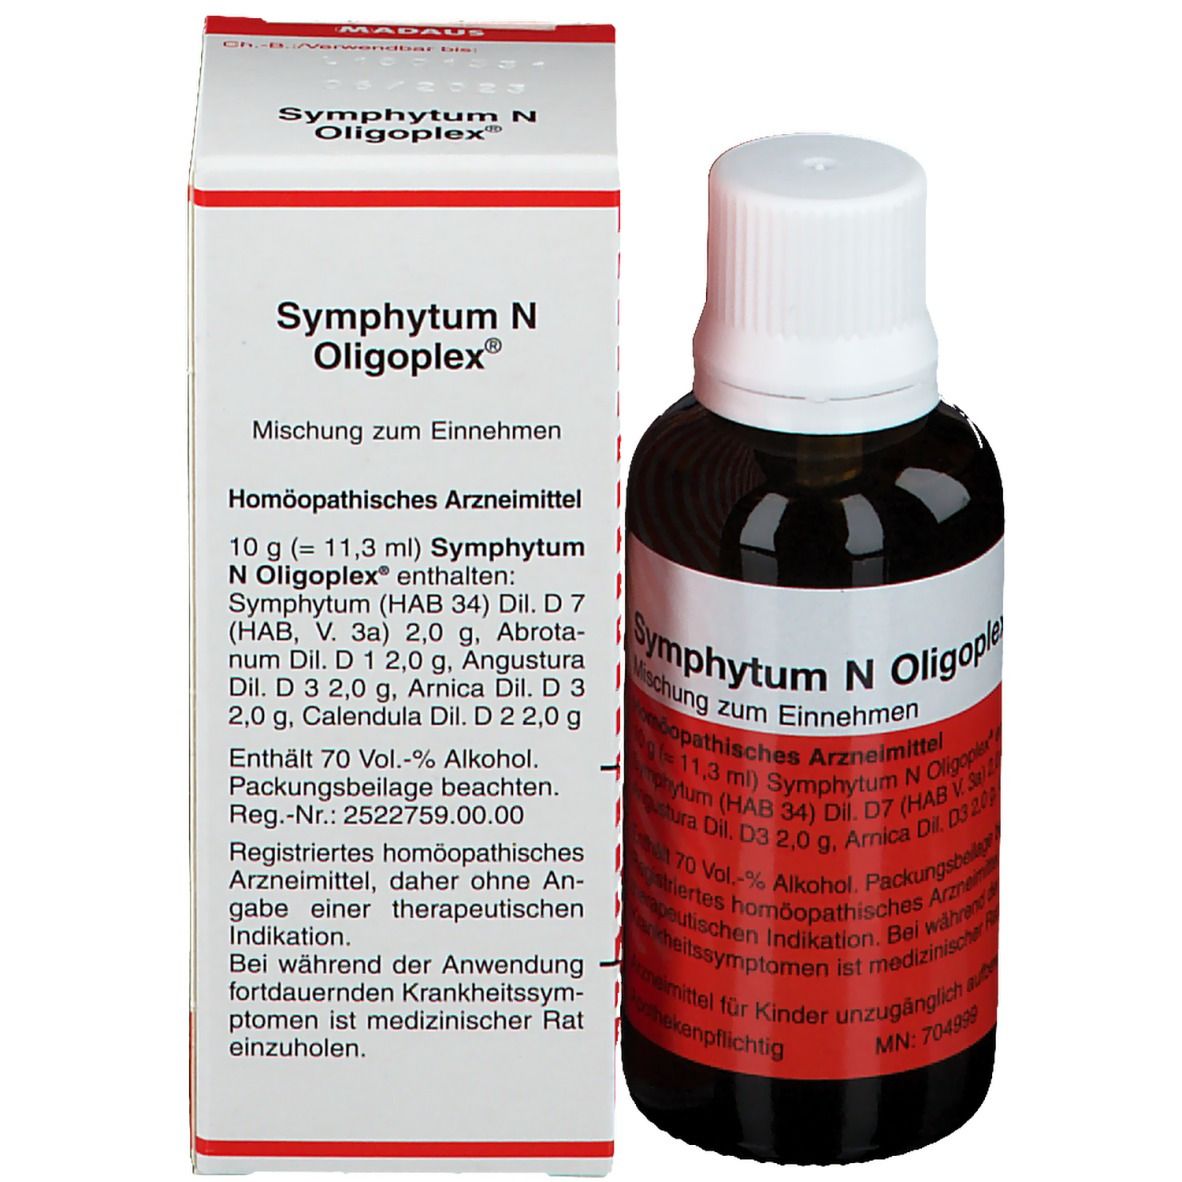 Symphytum N Oligoplex®